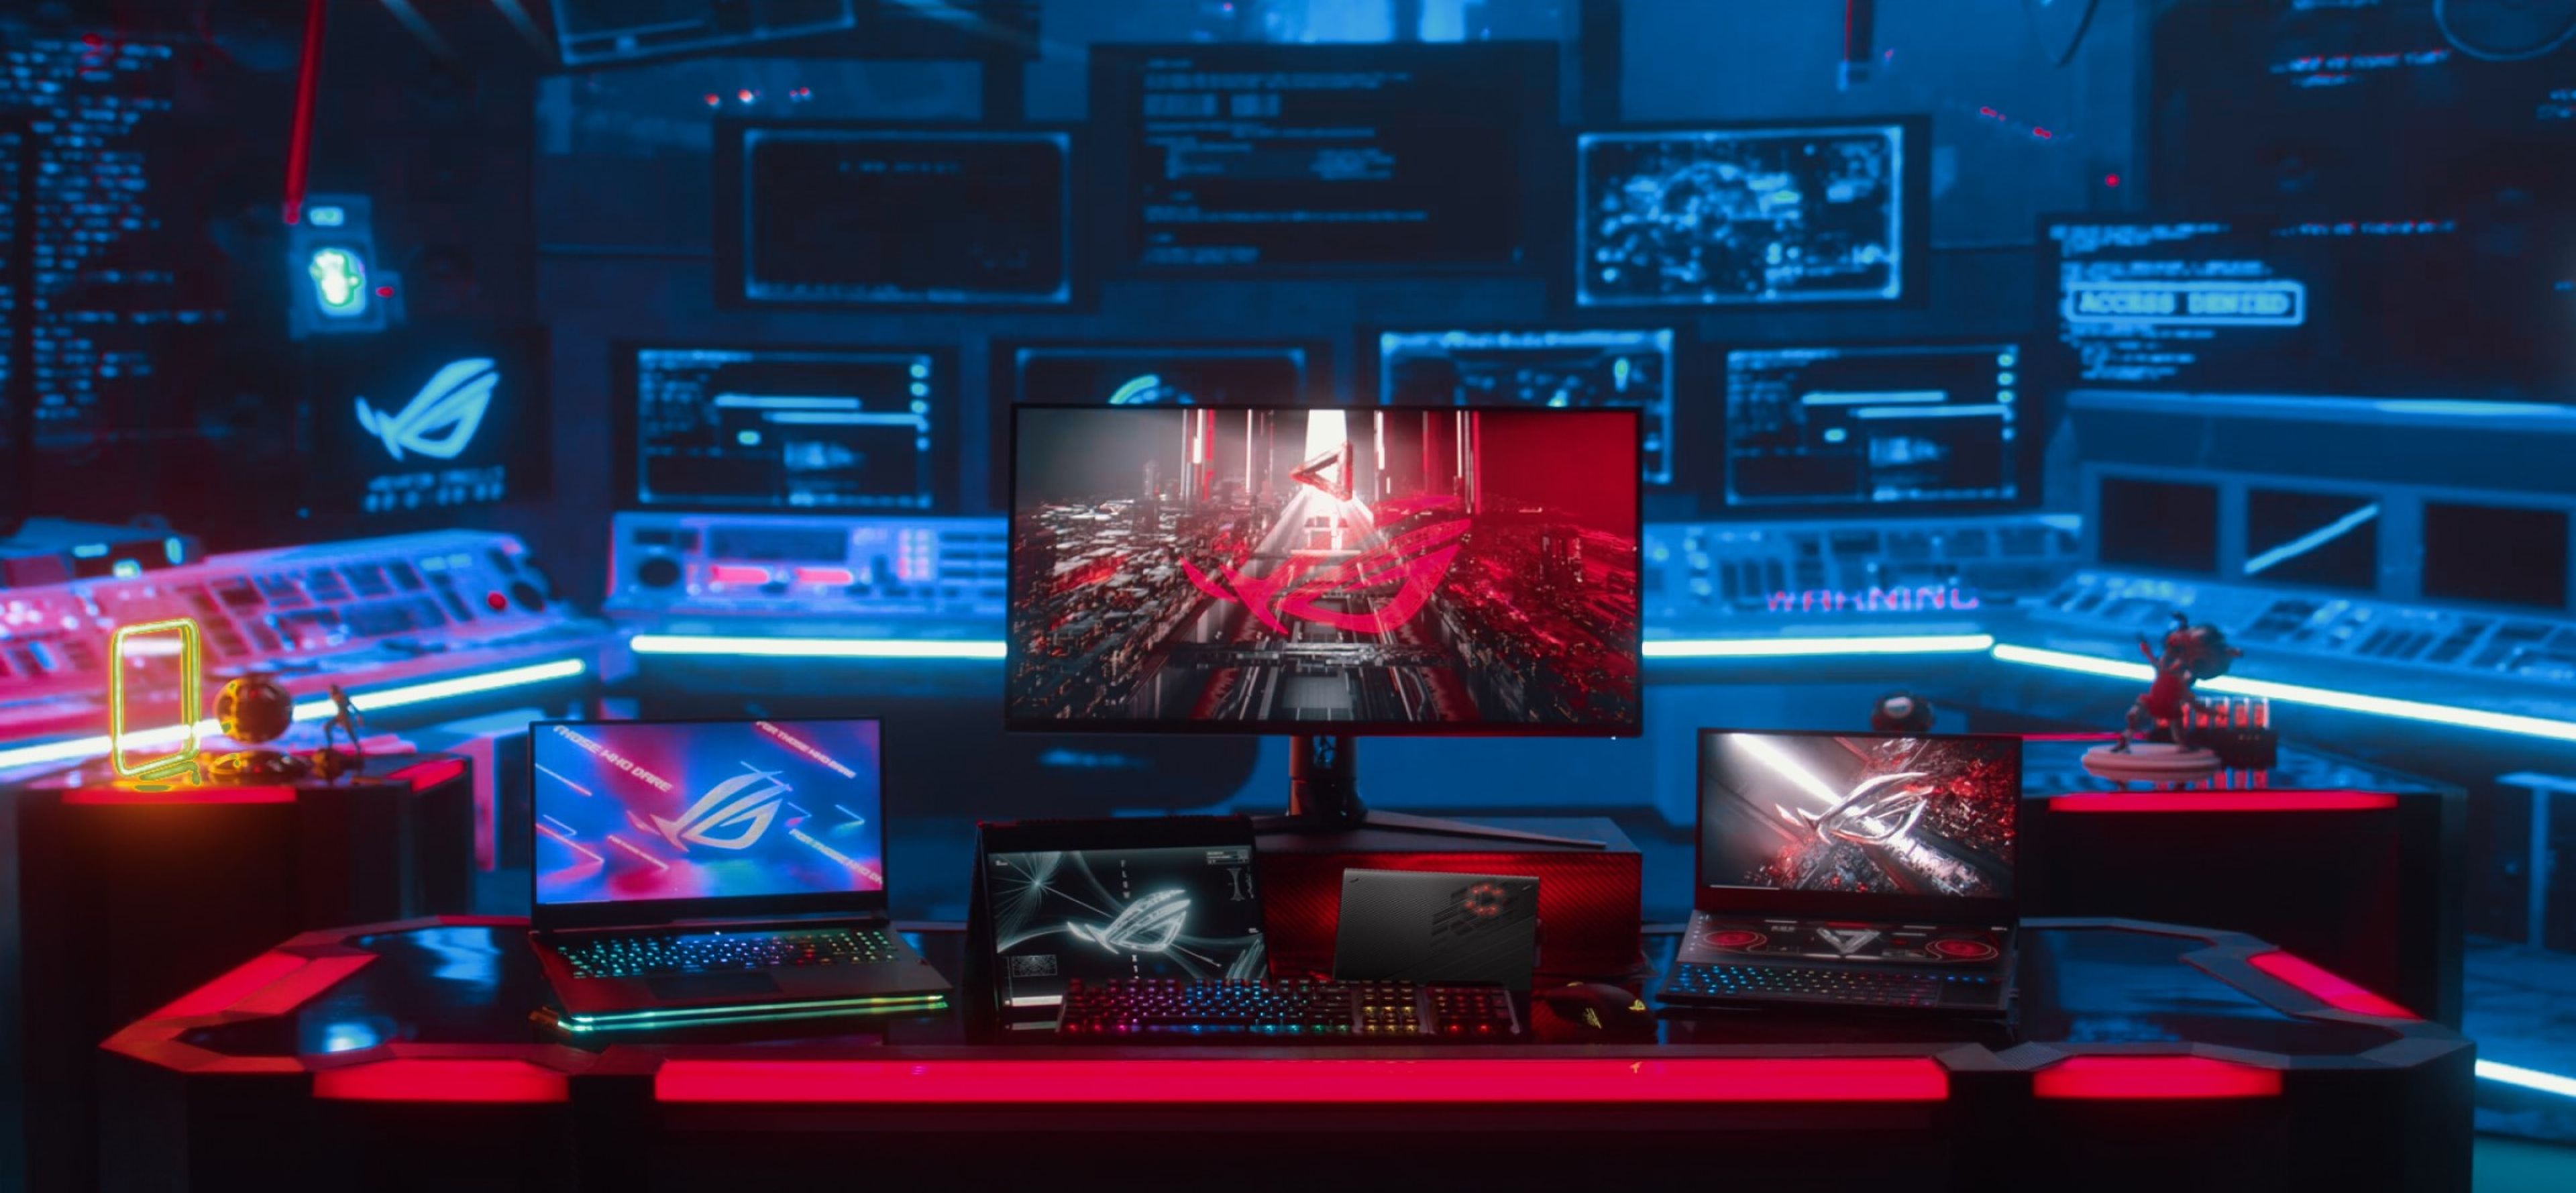 Asus hace gala de su ecosistema para gamers lanzando 3 portátiles, 1 monitor y varios periféricos